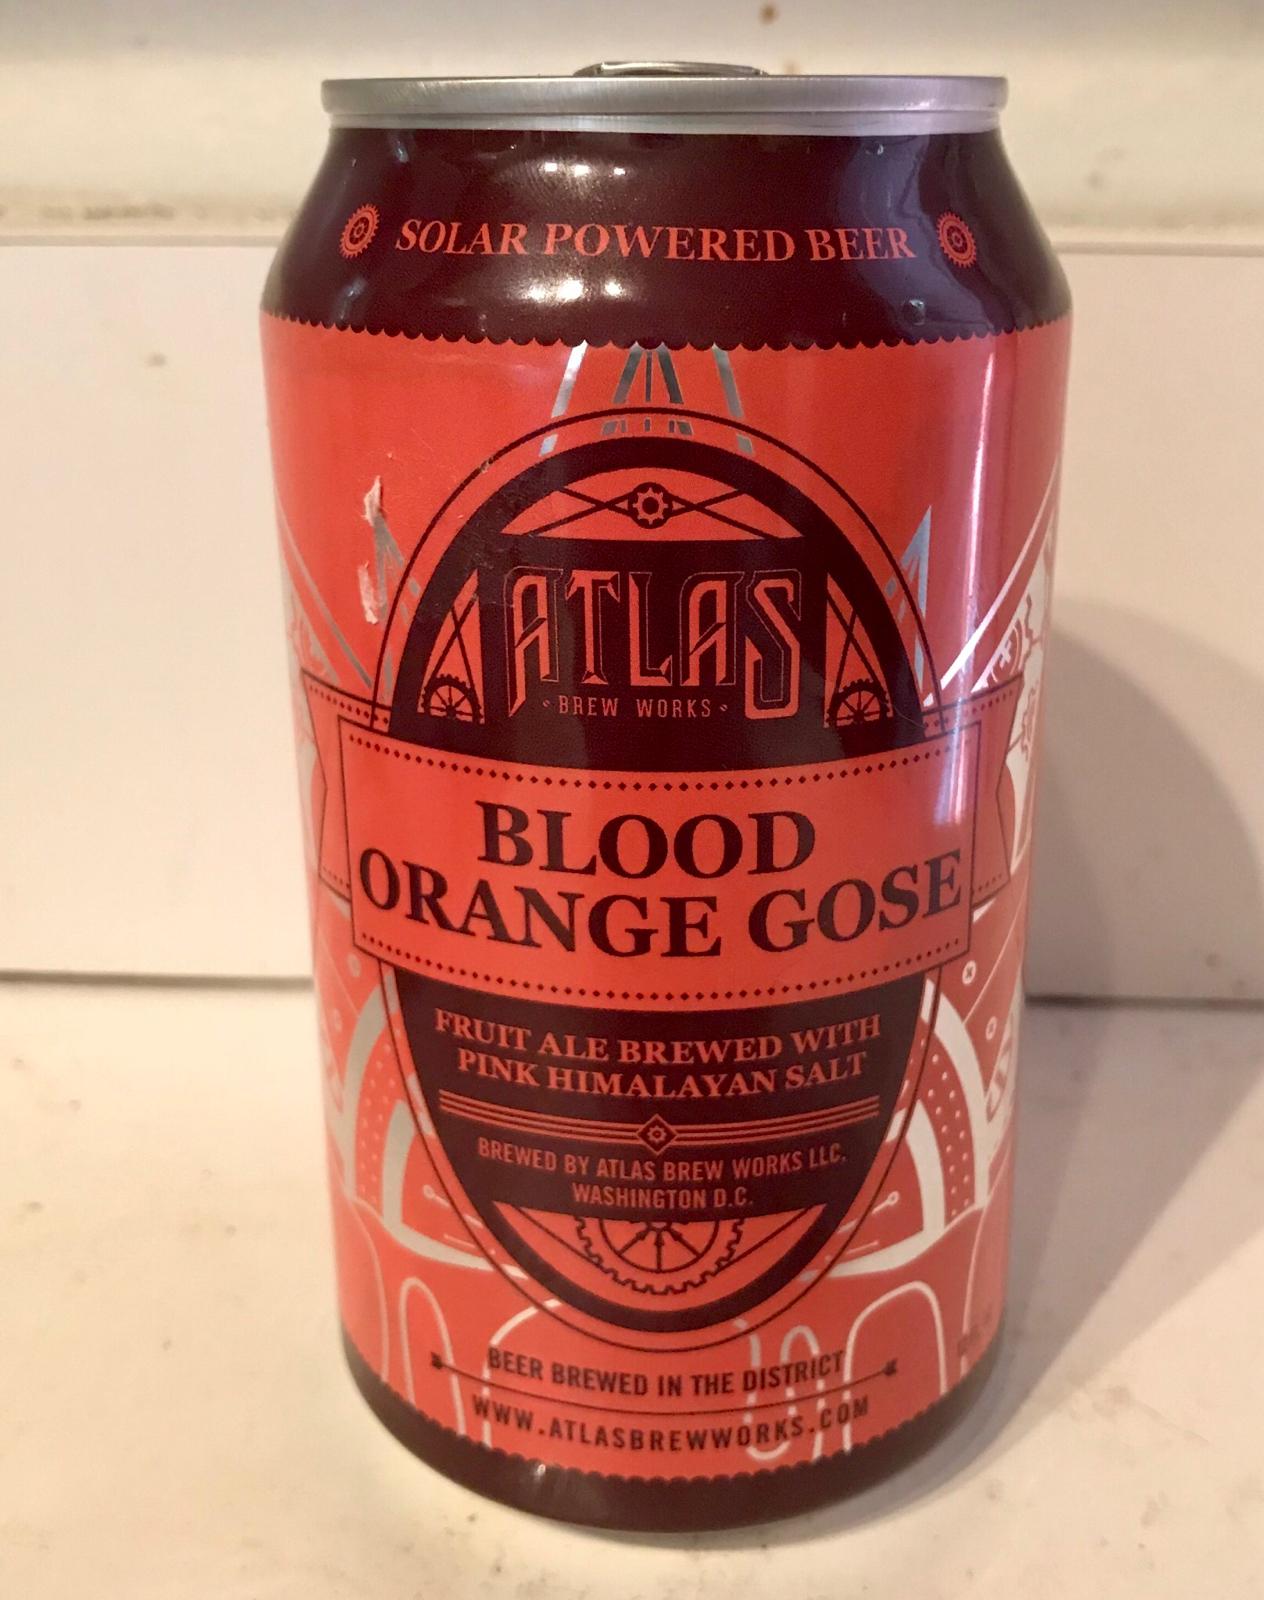 Blood Orange Gose